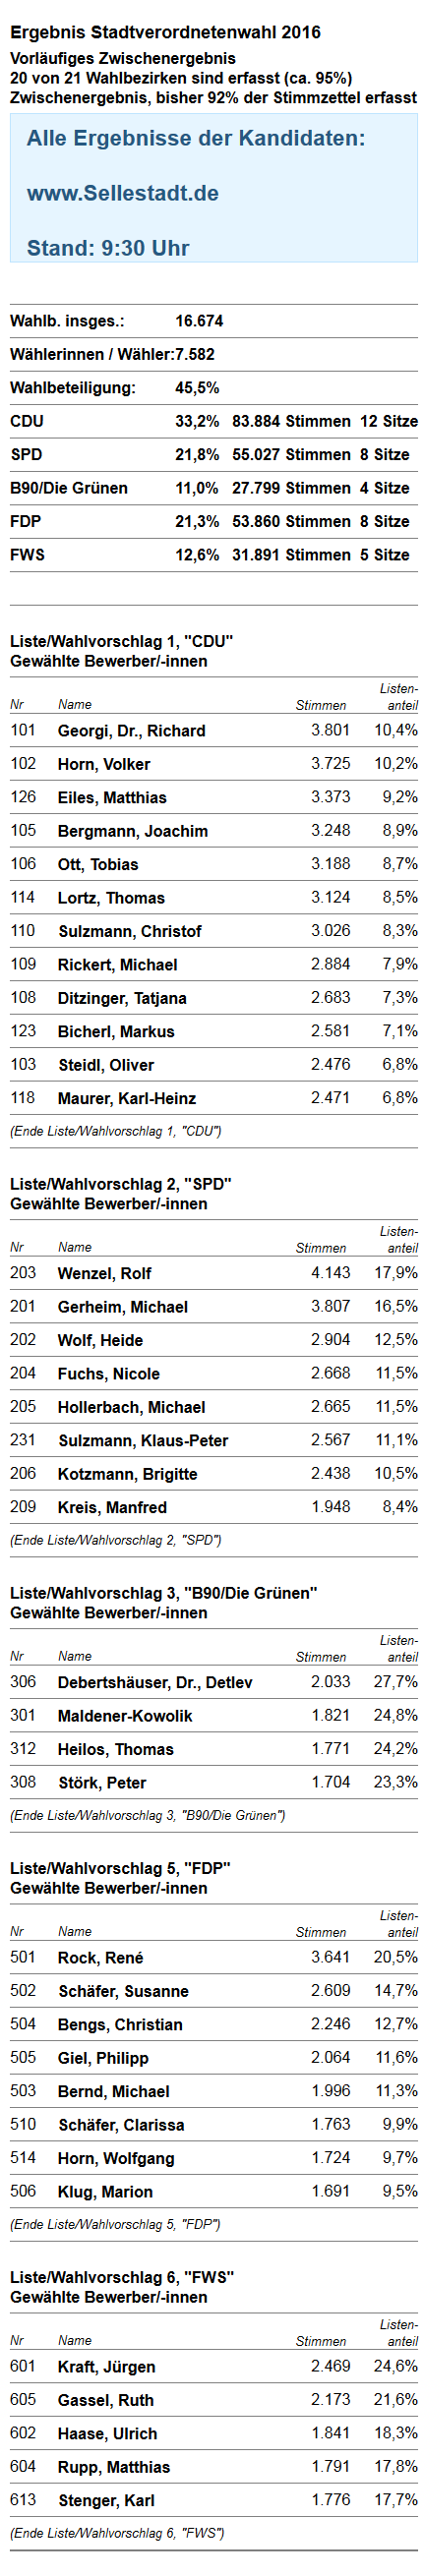 Kommunalwahl Seligenstadt vorl. Ergebnis 9:30